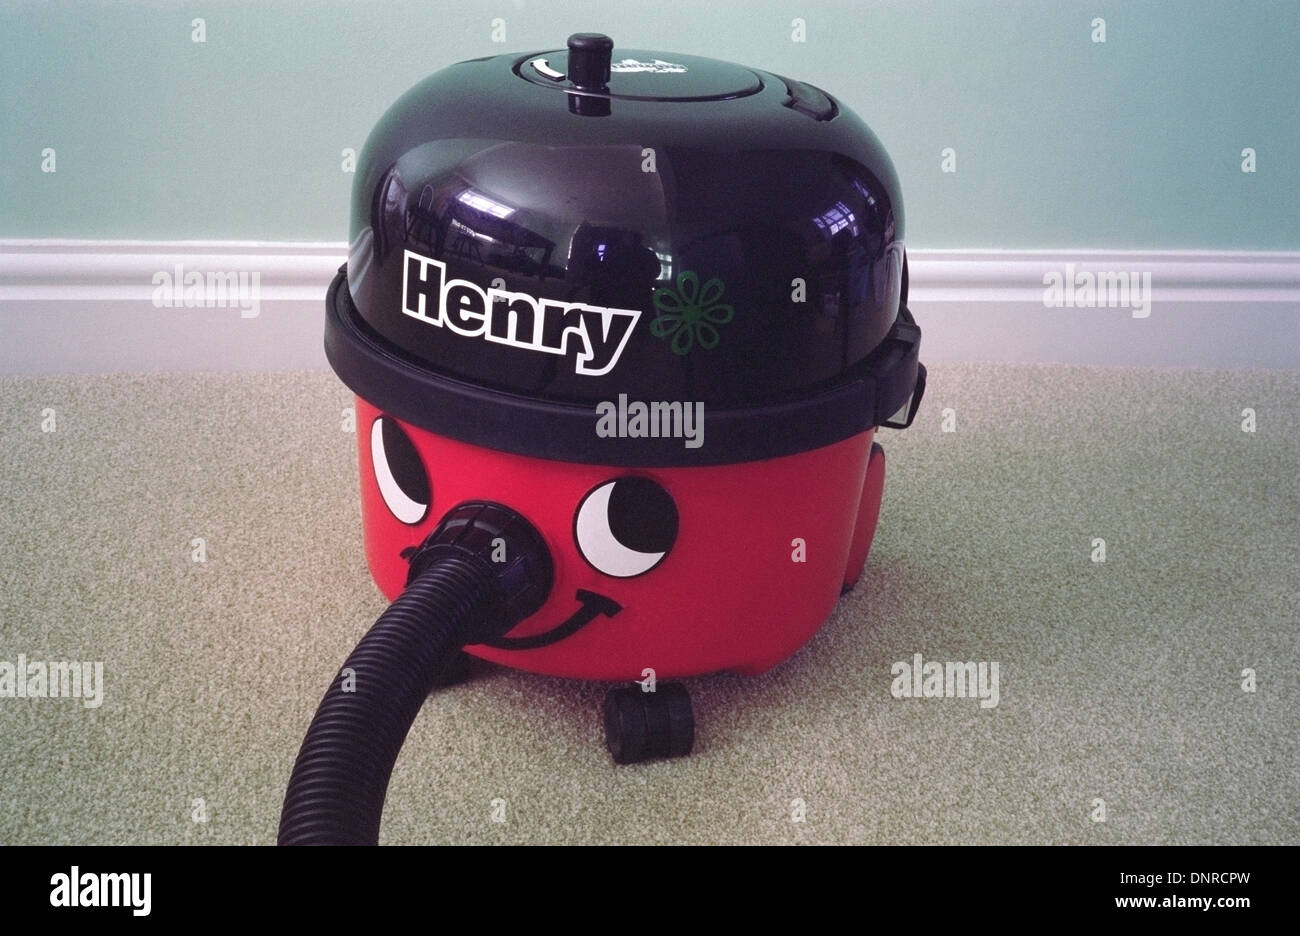 Henry Vacuum Cleaner, UK Stock Photo